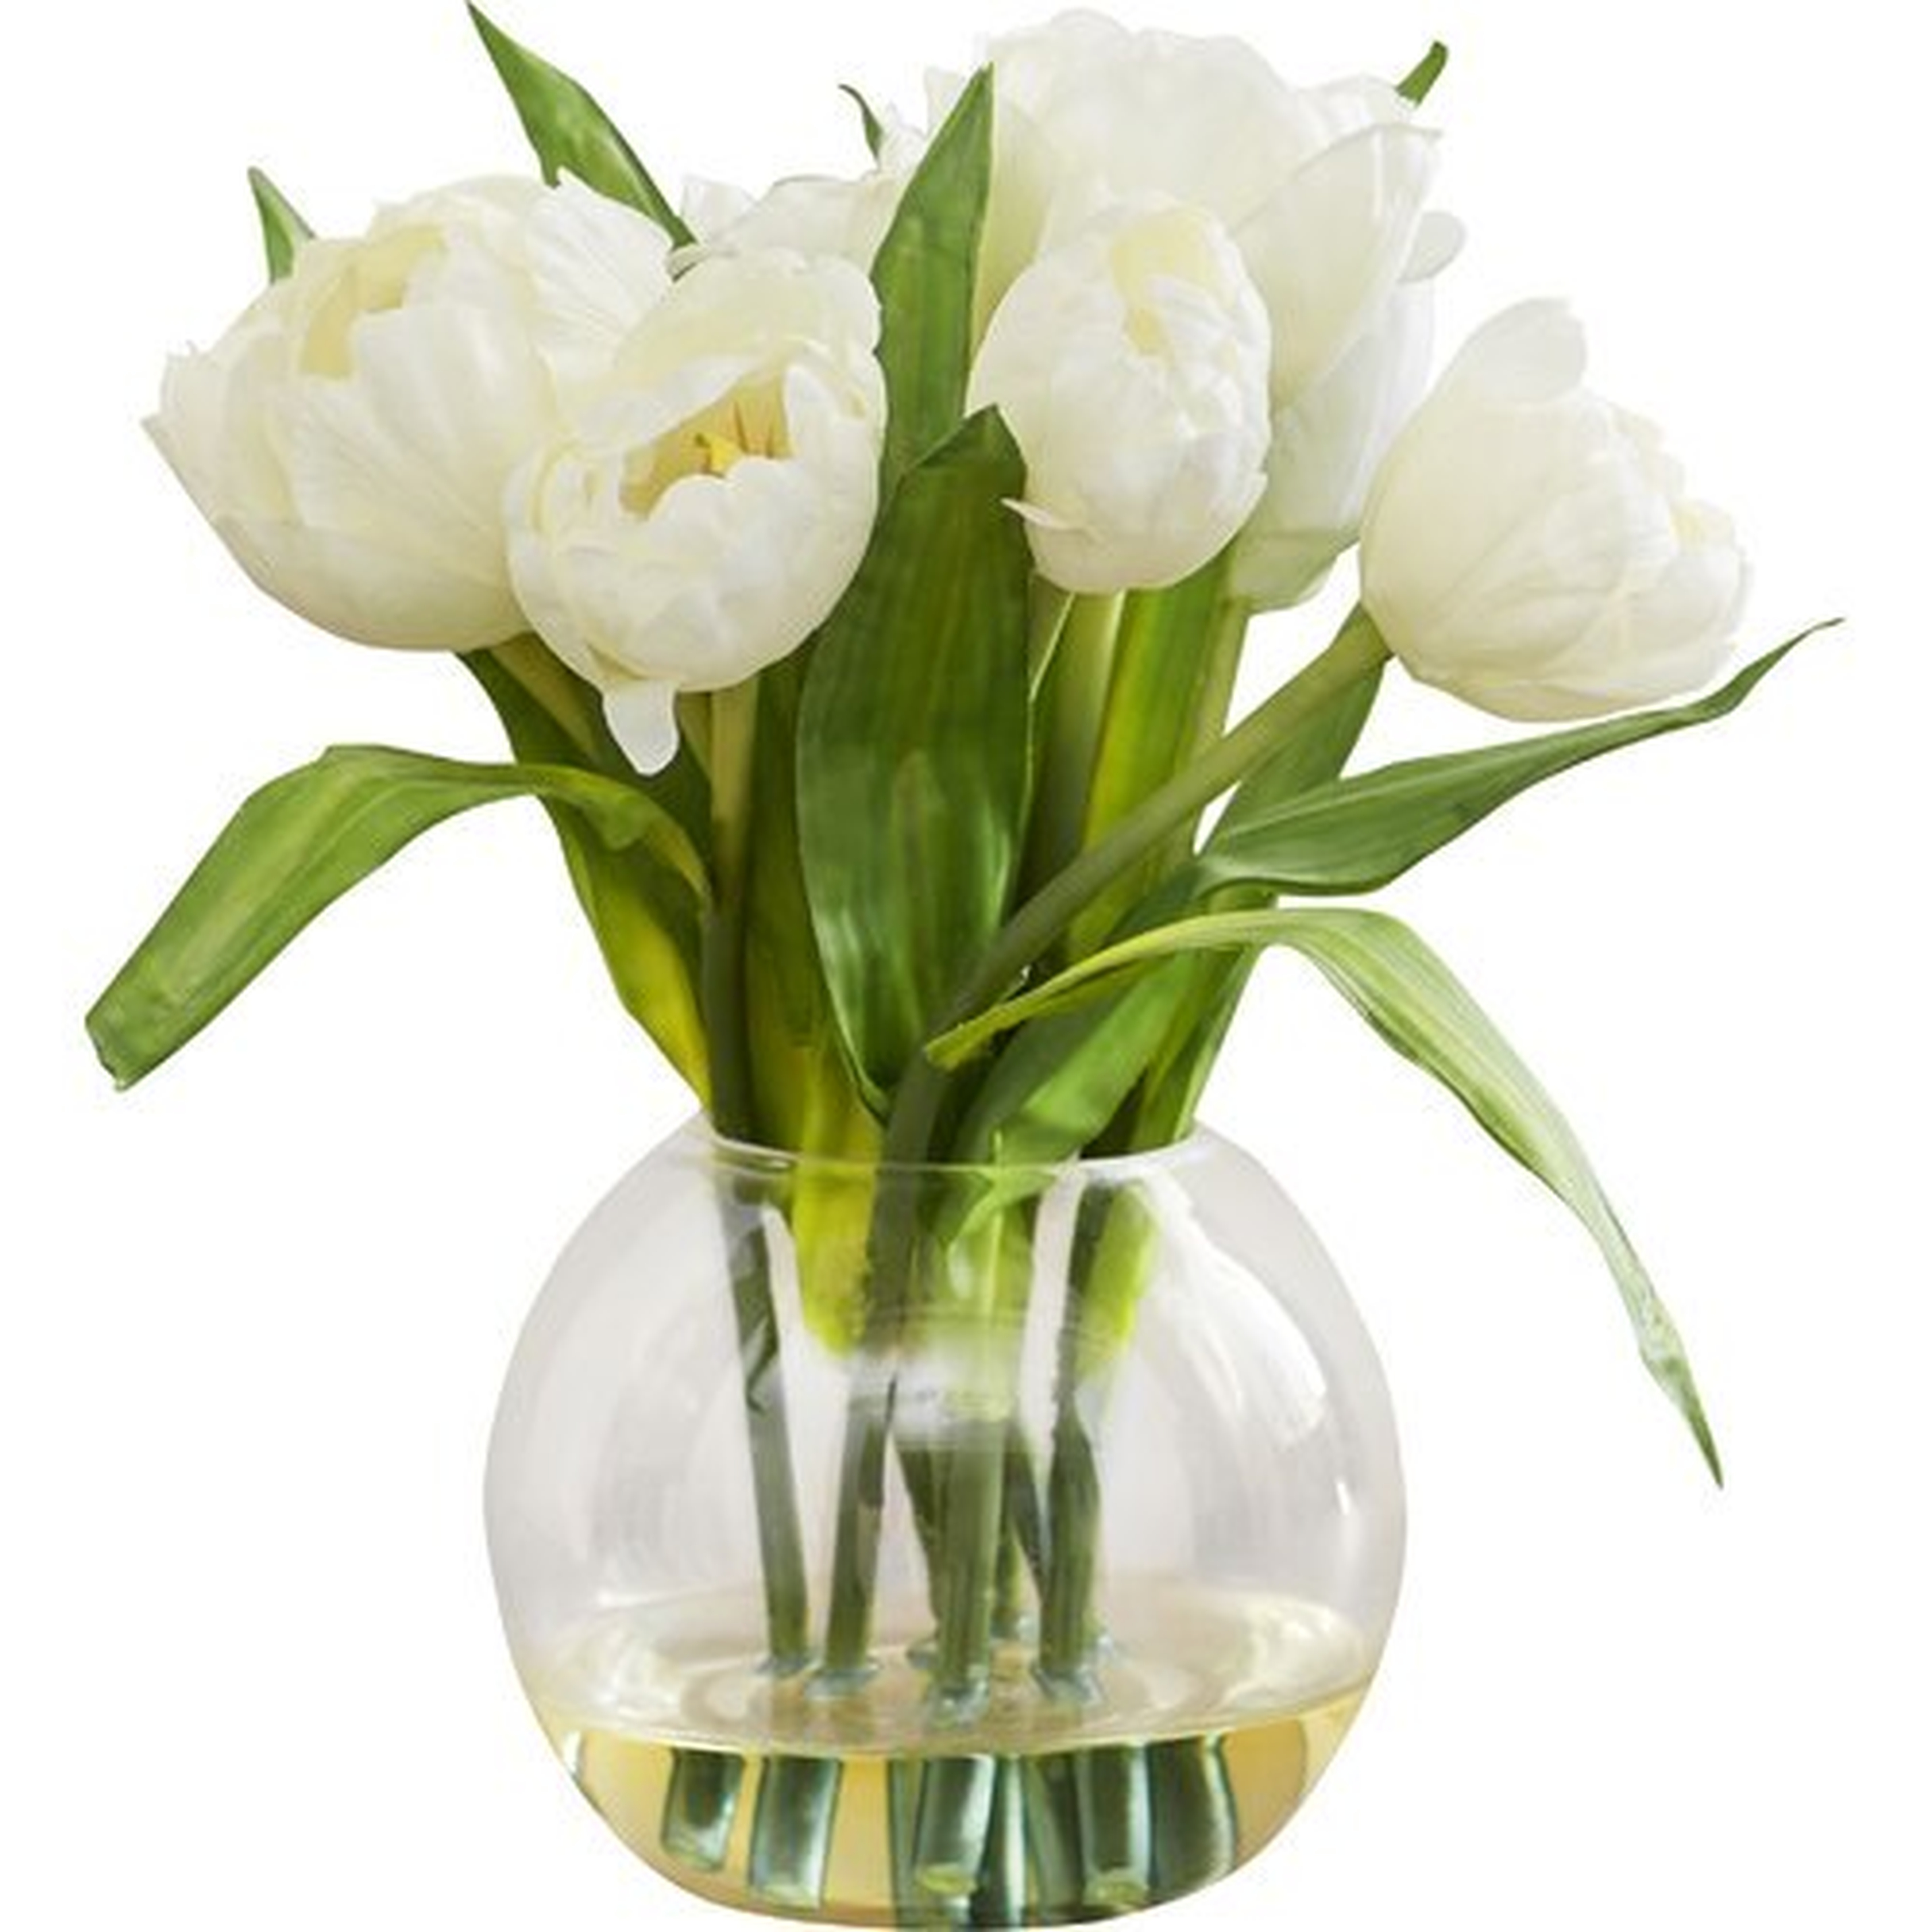 Tulips Arrangement with Vase - Wayfair